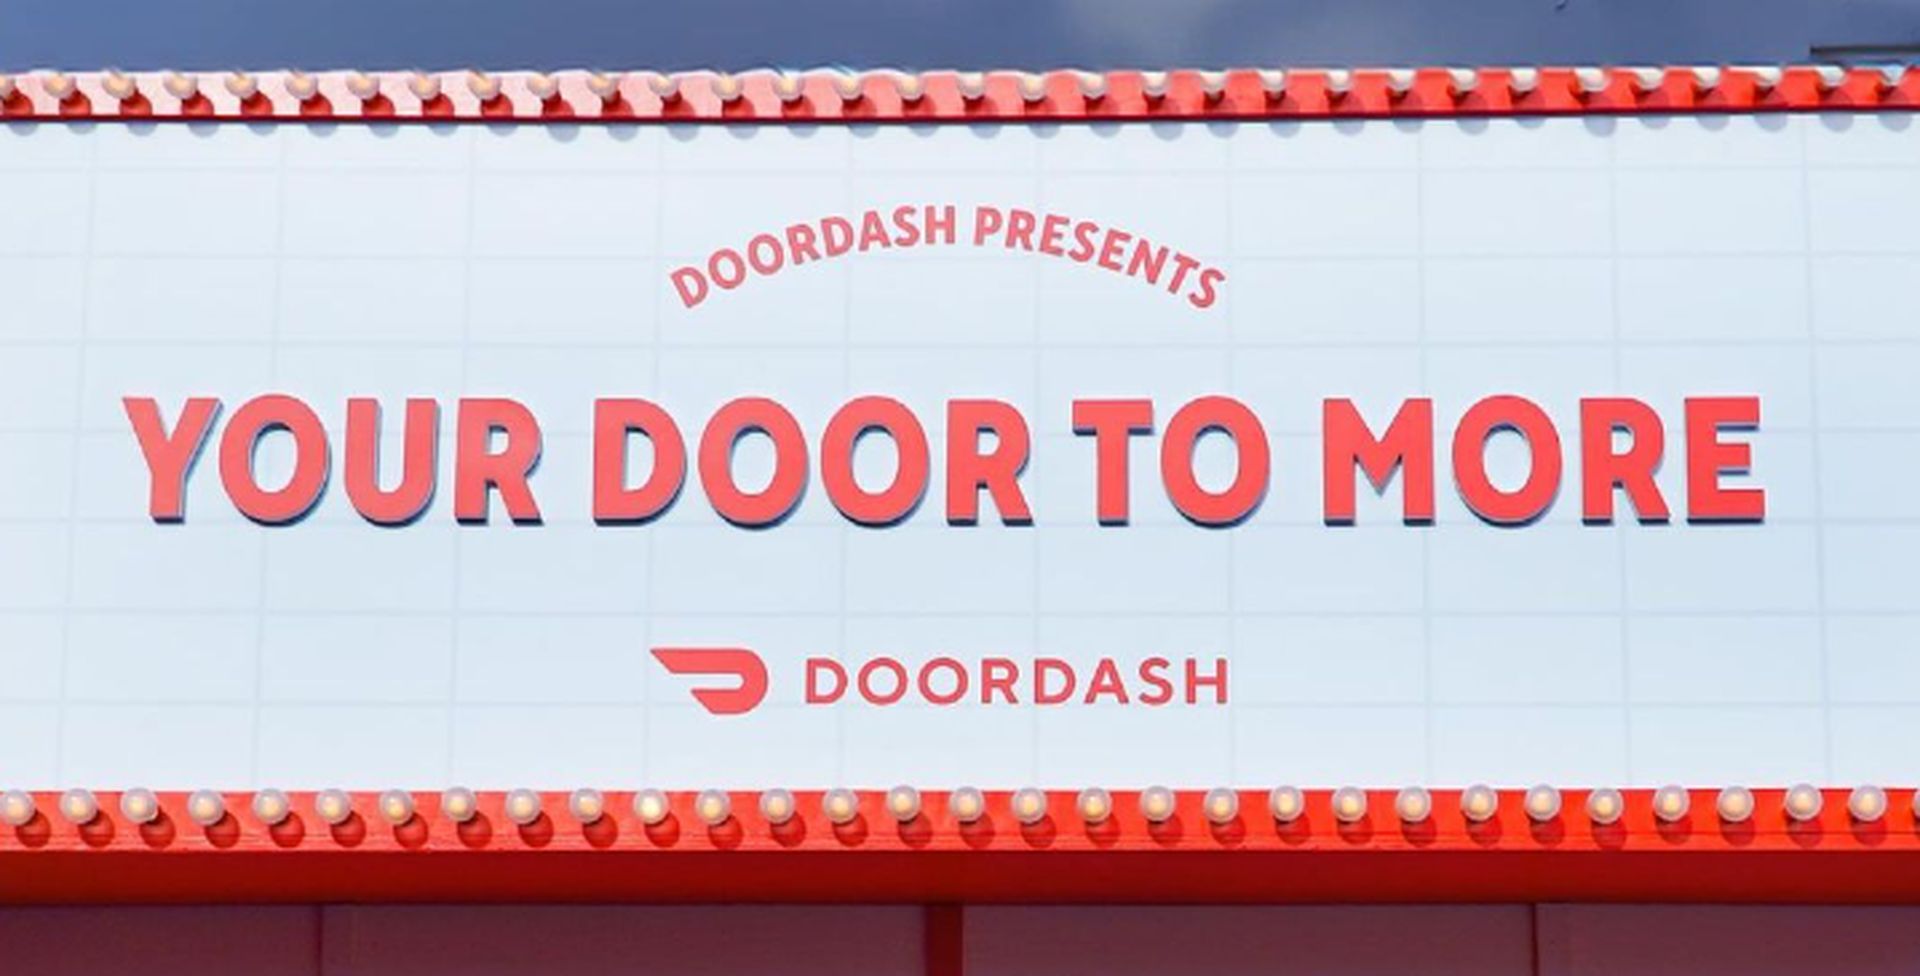 DoorDash promo code not working: How to fix it?